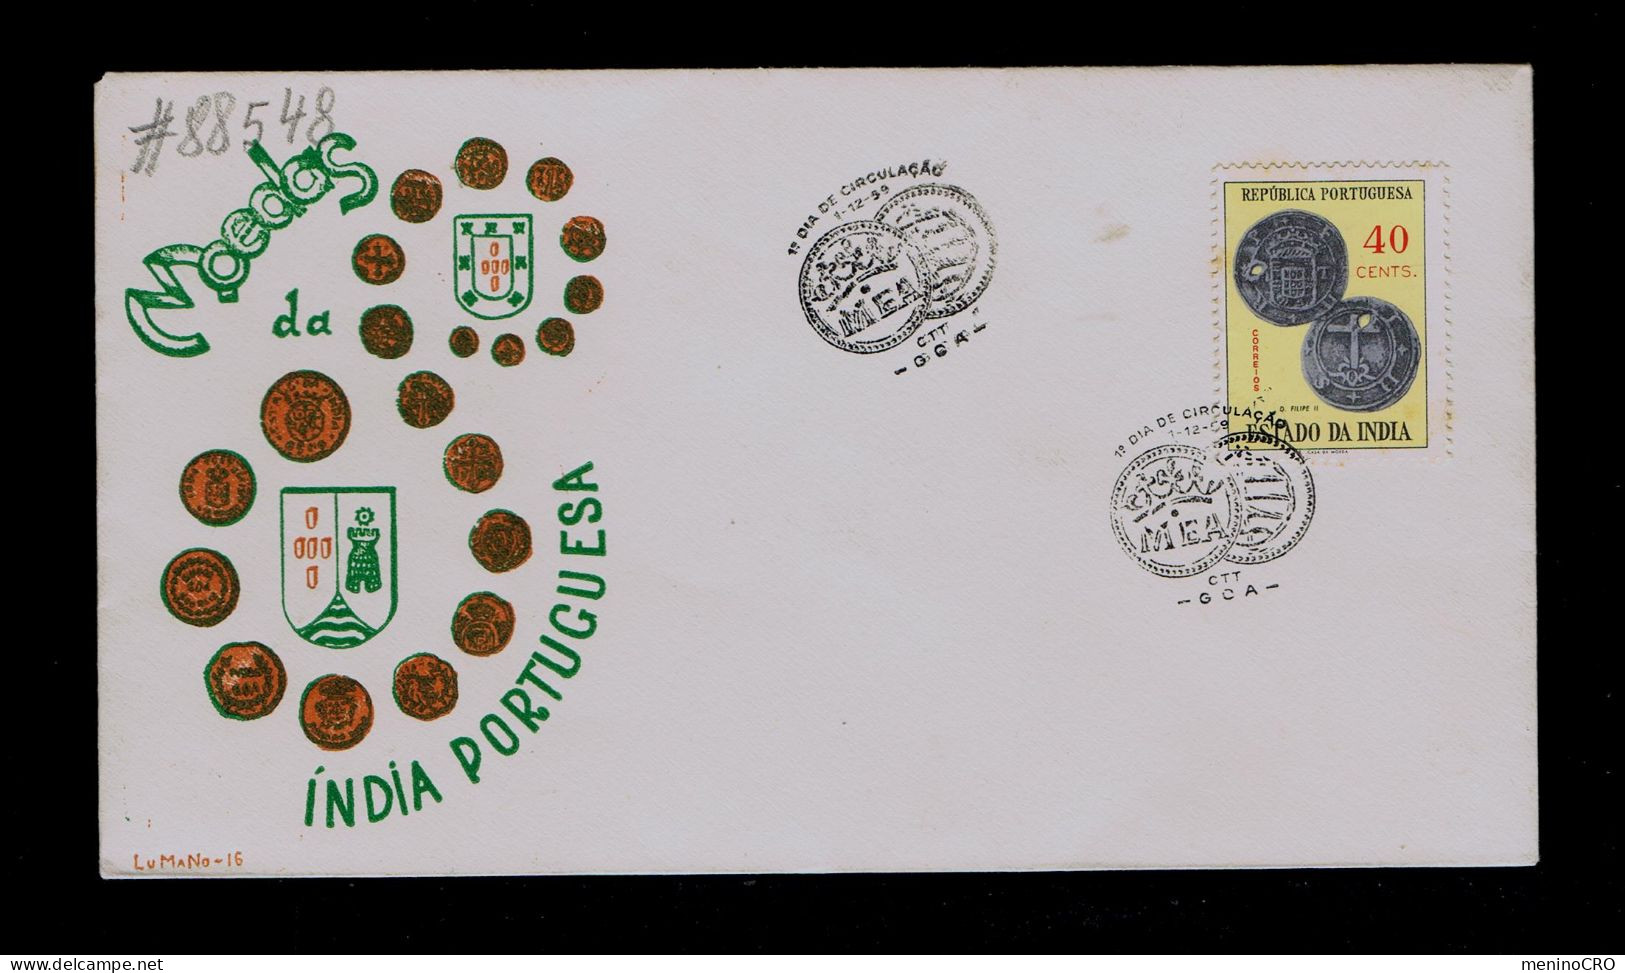 #88548 ESTADO DA INDIA GOA "coins" Monaies Issue MEA 1450-1959 Portugal - Monnaies